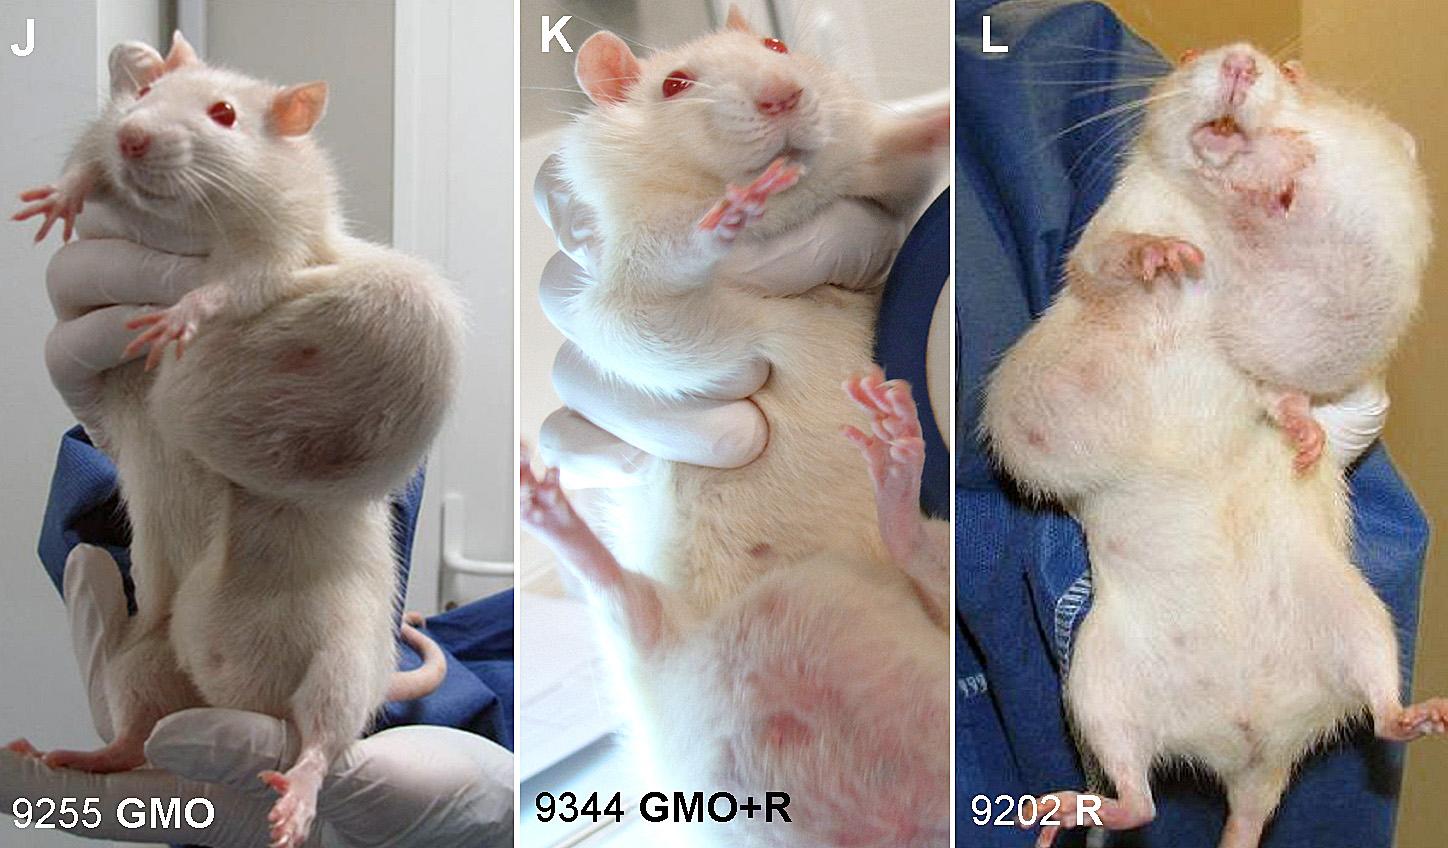 Des tumeurs grosses comme des balles de ping-pong se sont développées sur des rats. [AFP - CHARLY TRIBALLEAU]